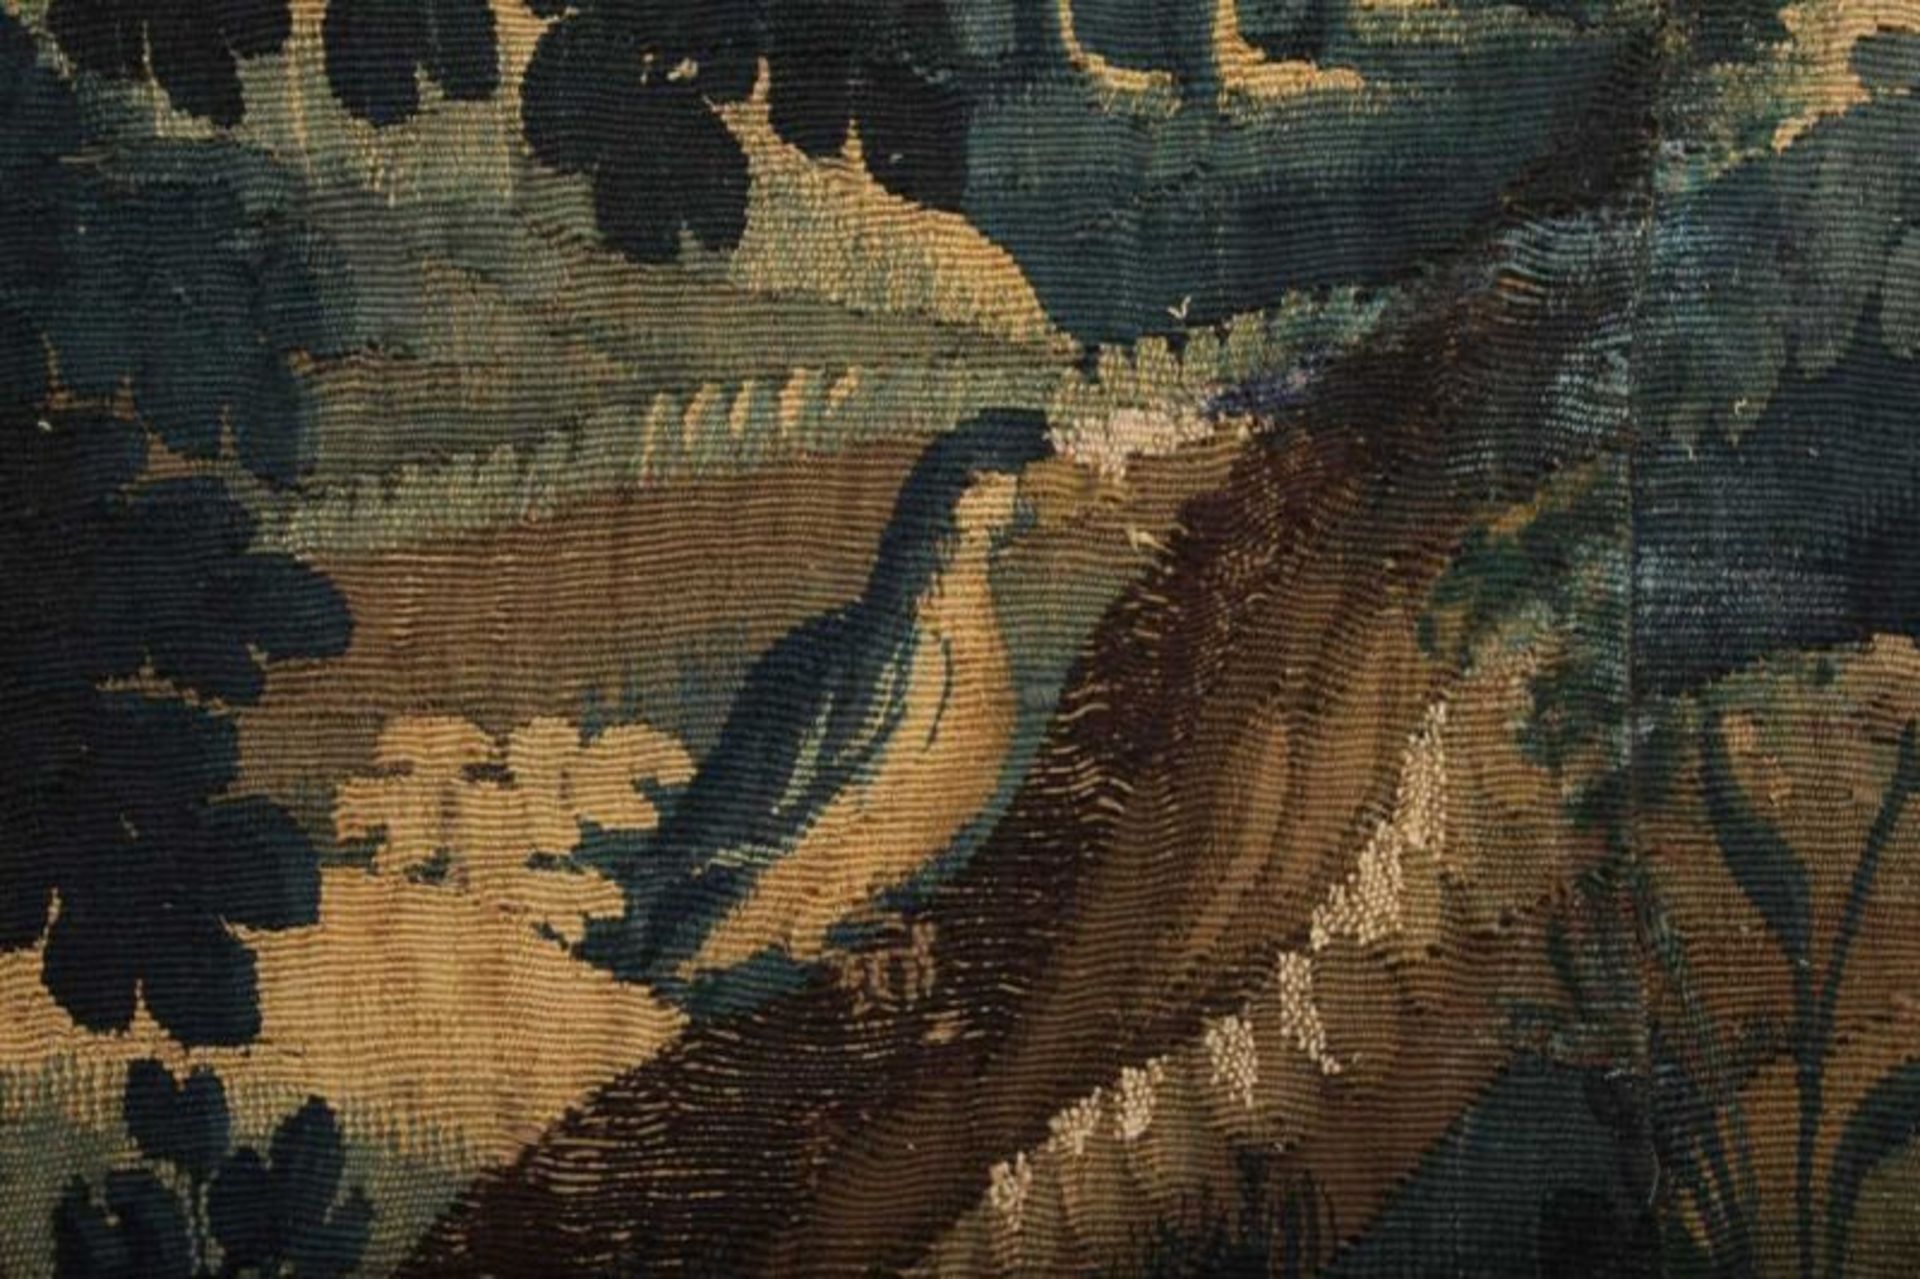 TAPISSERIE, Wolle, gefärbt und gewirkt, aus Fragmenten eines ehemals größeren Gobelins - Bild 2 aus 3